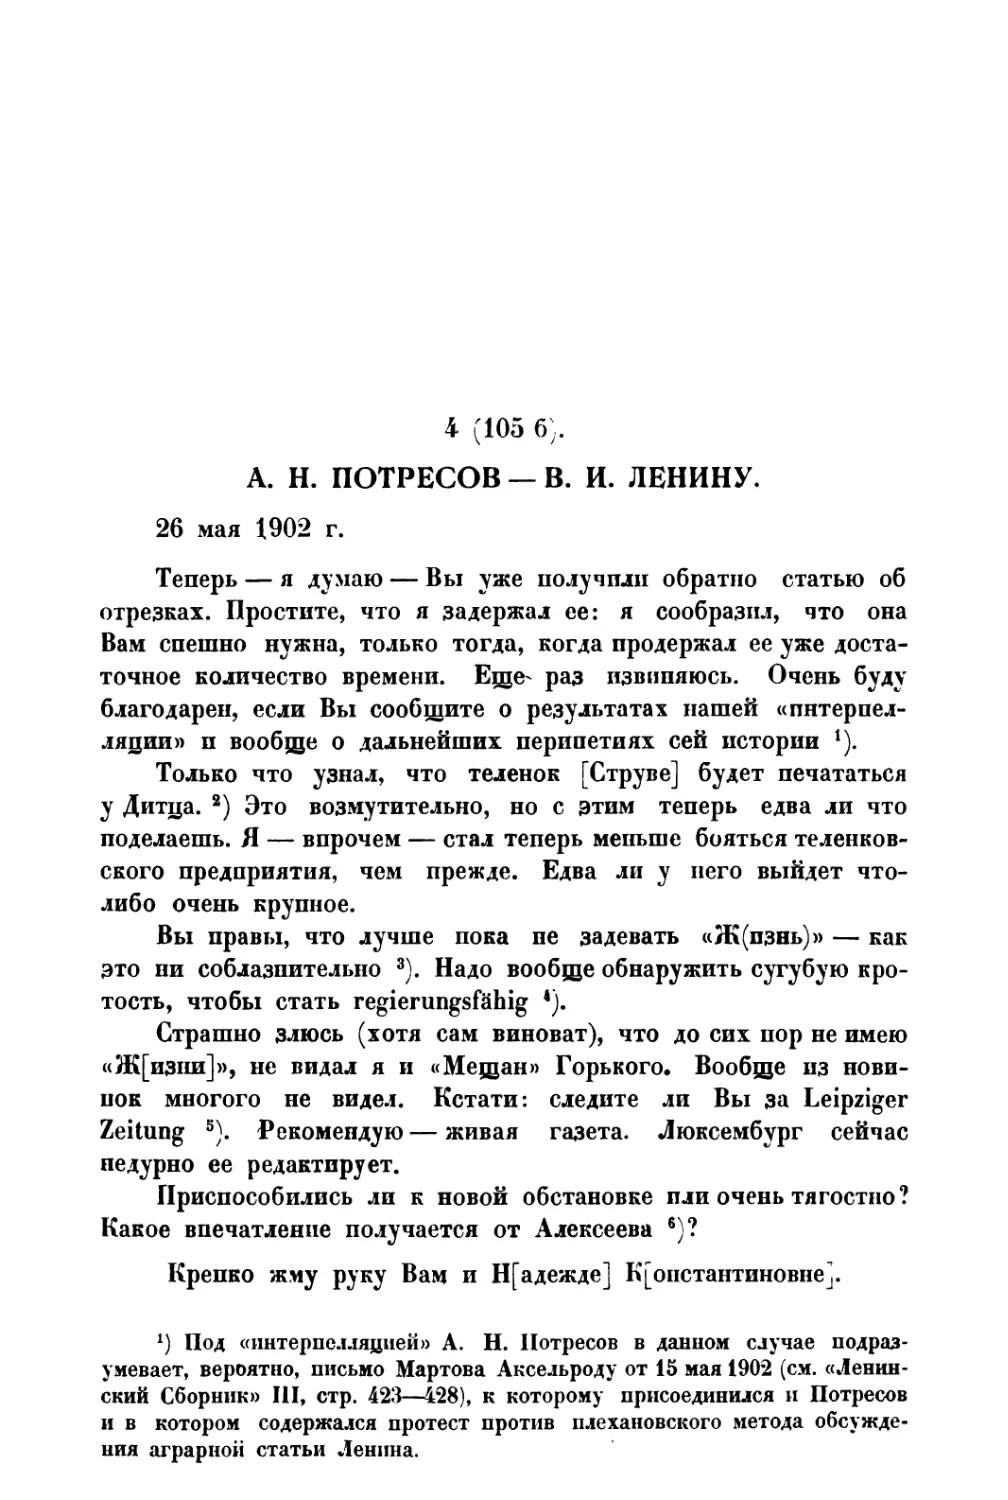 4. А. Н. Потресов — В. И. Ленину от 26 V 1902 г